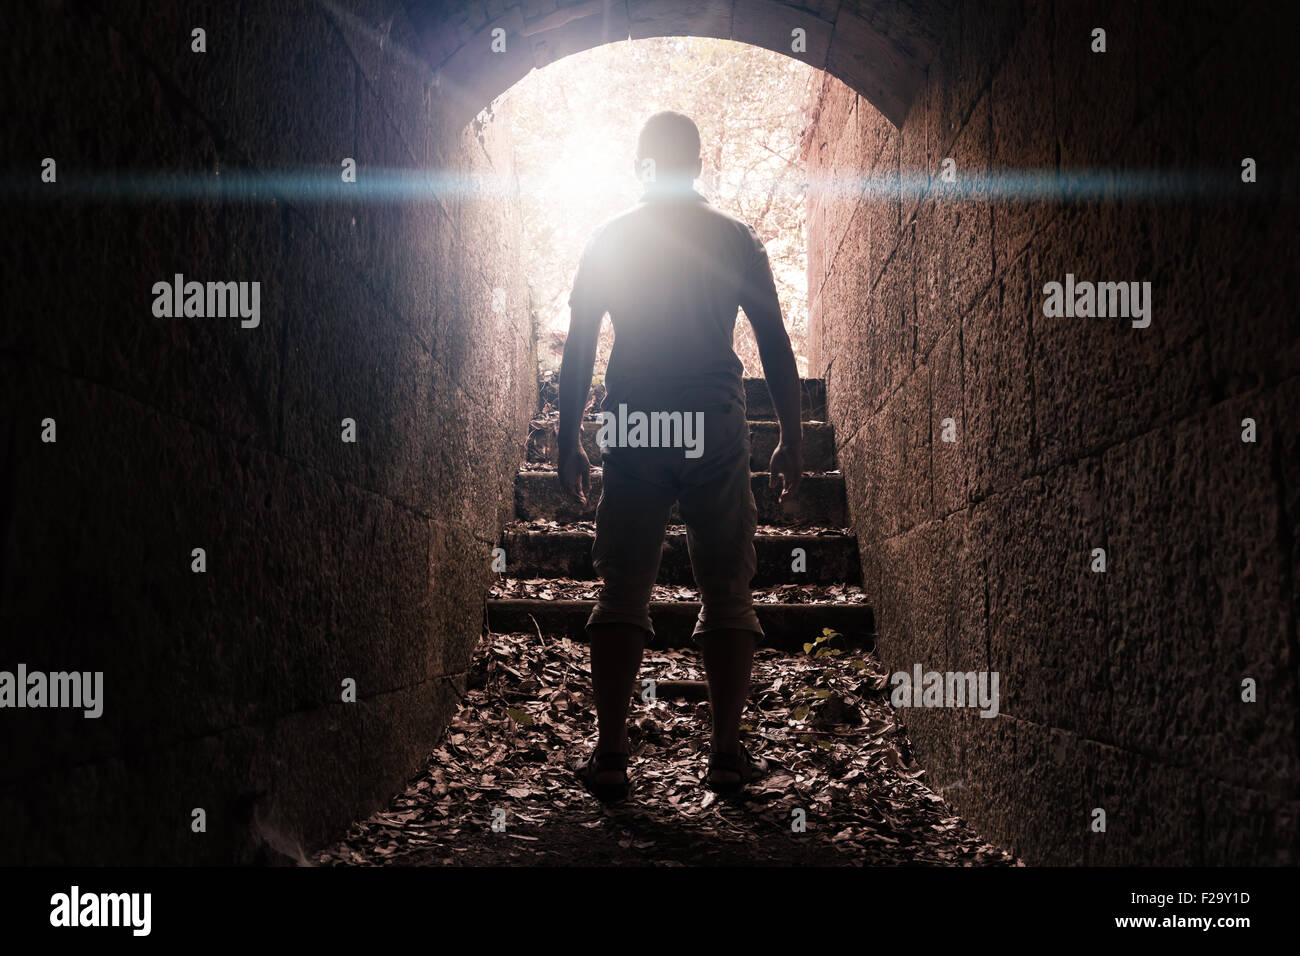 Junger Mann steht in dunklen Stein Tunnel mit glühenden Ende, warm getönten Foto mit Linse glow Effekt Stockfoto